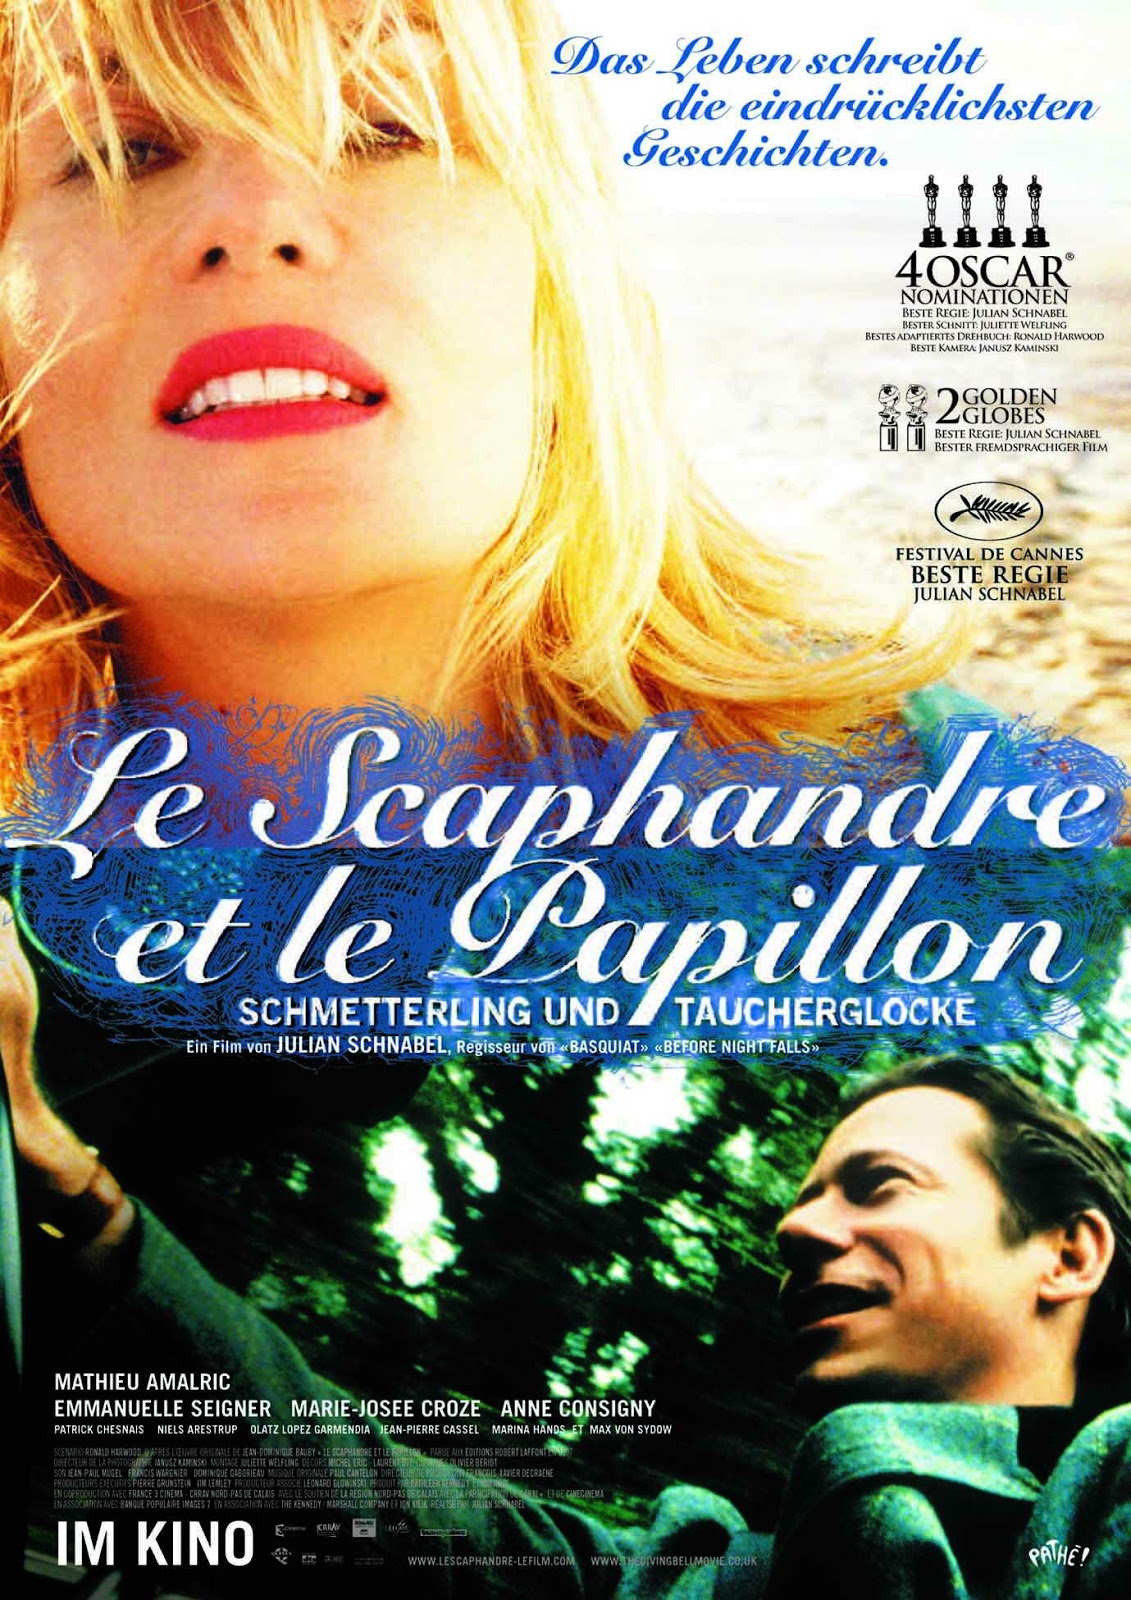 Le scaphandre et le papillon (2007) BrRip 1080p VOSE